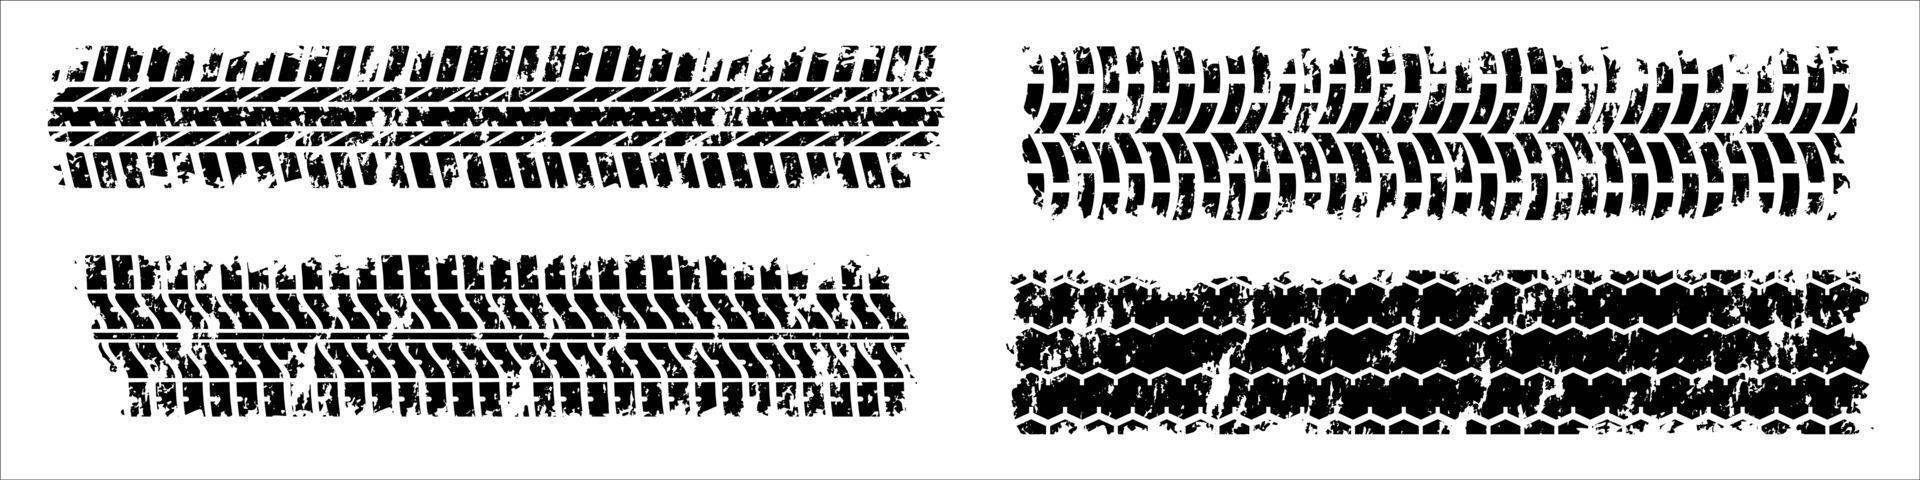 set vettoriale di impronte di pneumatici dettagliate